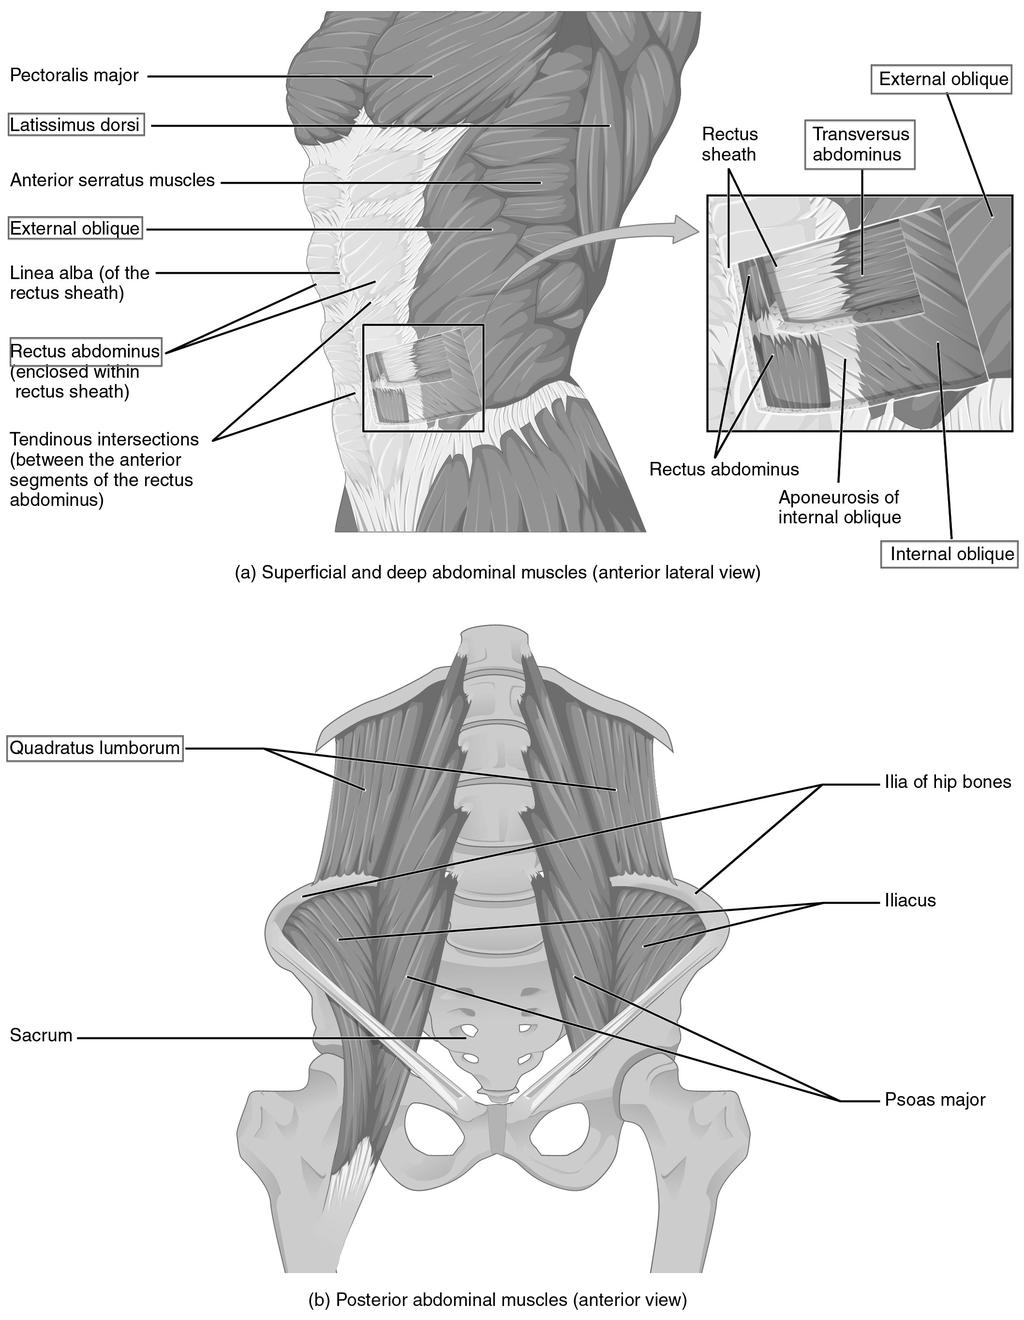 Stödmuskulaturen kan delas in tre olika delar: mage, rygg och länd. När dessa muskler samarbetar hålls diafragman i sitt låga läge och revbenen hålls utvidgade (Sadolin, 2012, s. 29).